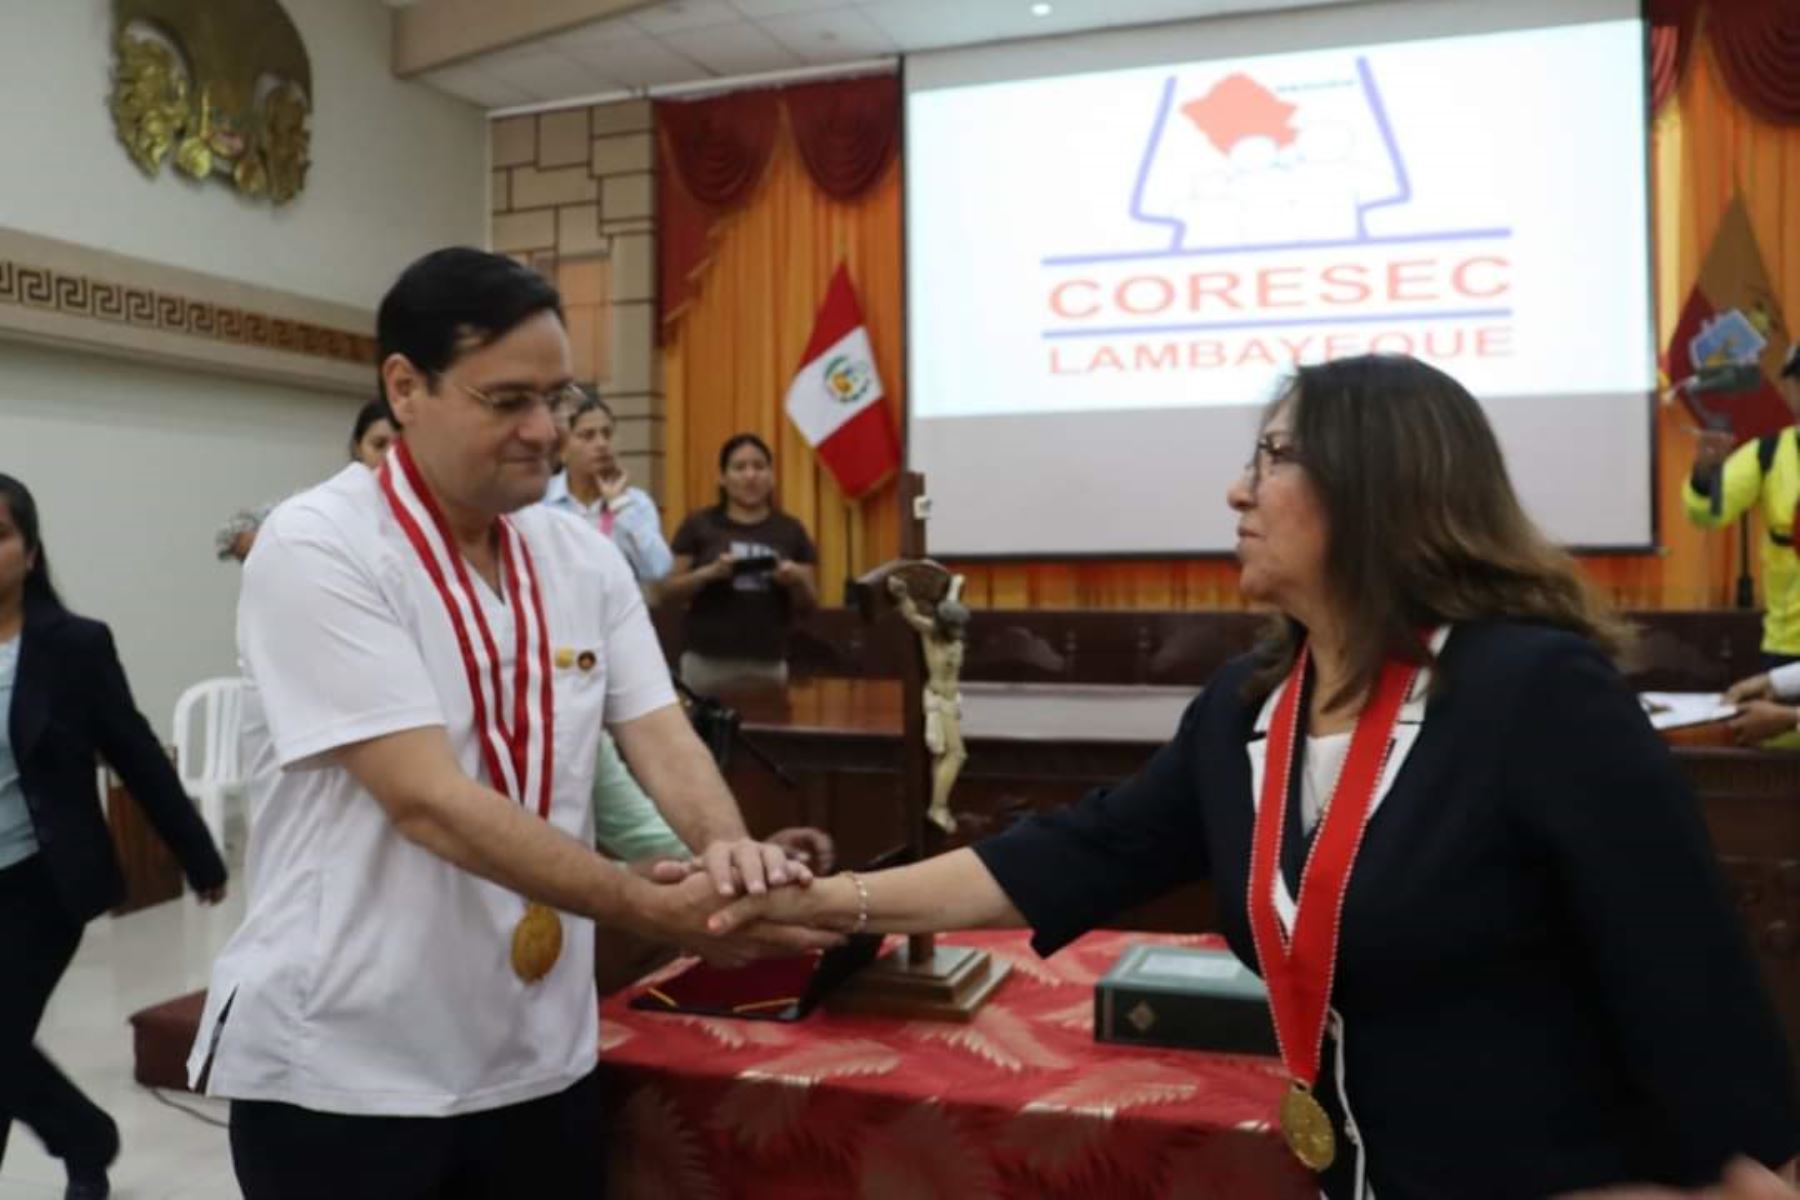 El gobernador regional de Lambayeque, Jorge Pérez, juramentó a los miembros del Coresec y anunció medidas para mejorar la seguridad ciudadana en esa región.